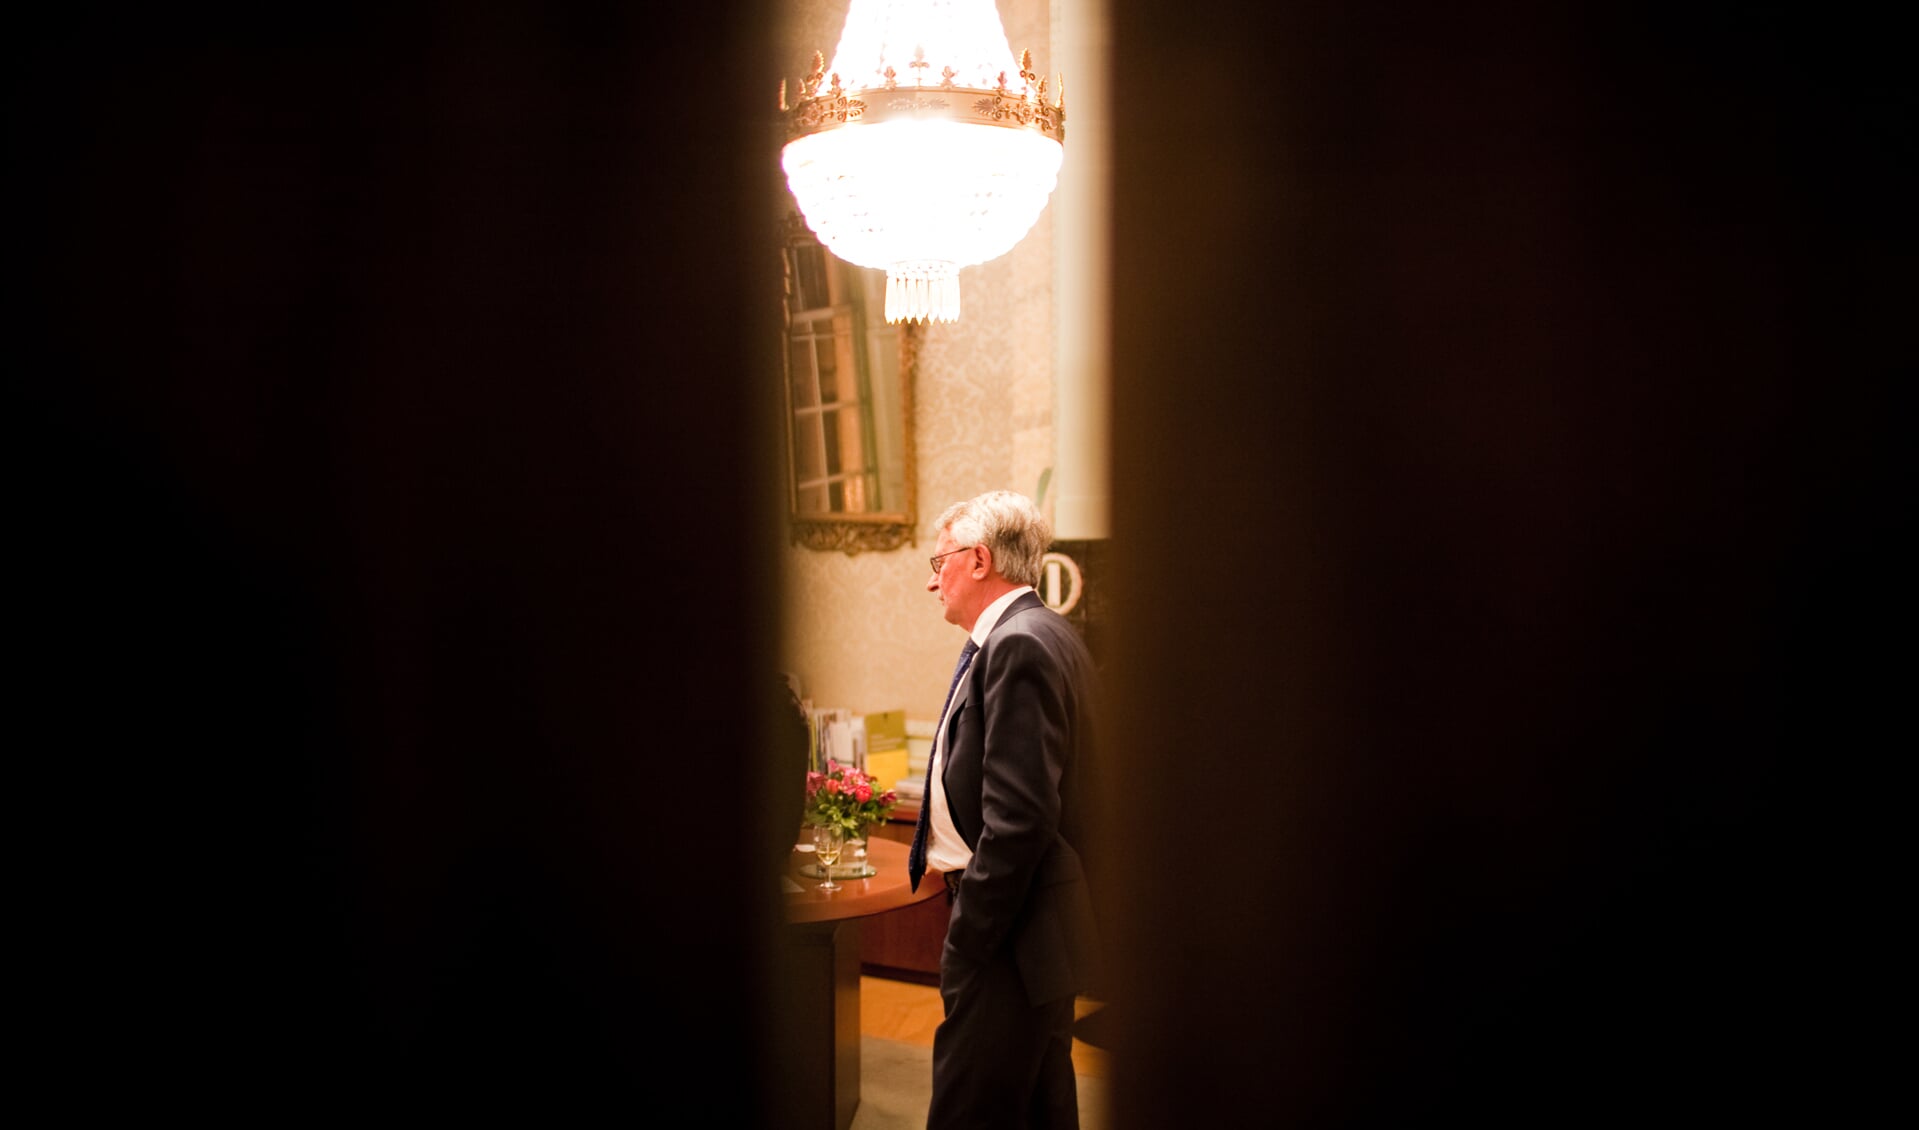 Burgemeester Bart Horseling wikt en weegt in zijn kamer over gevolgen storing